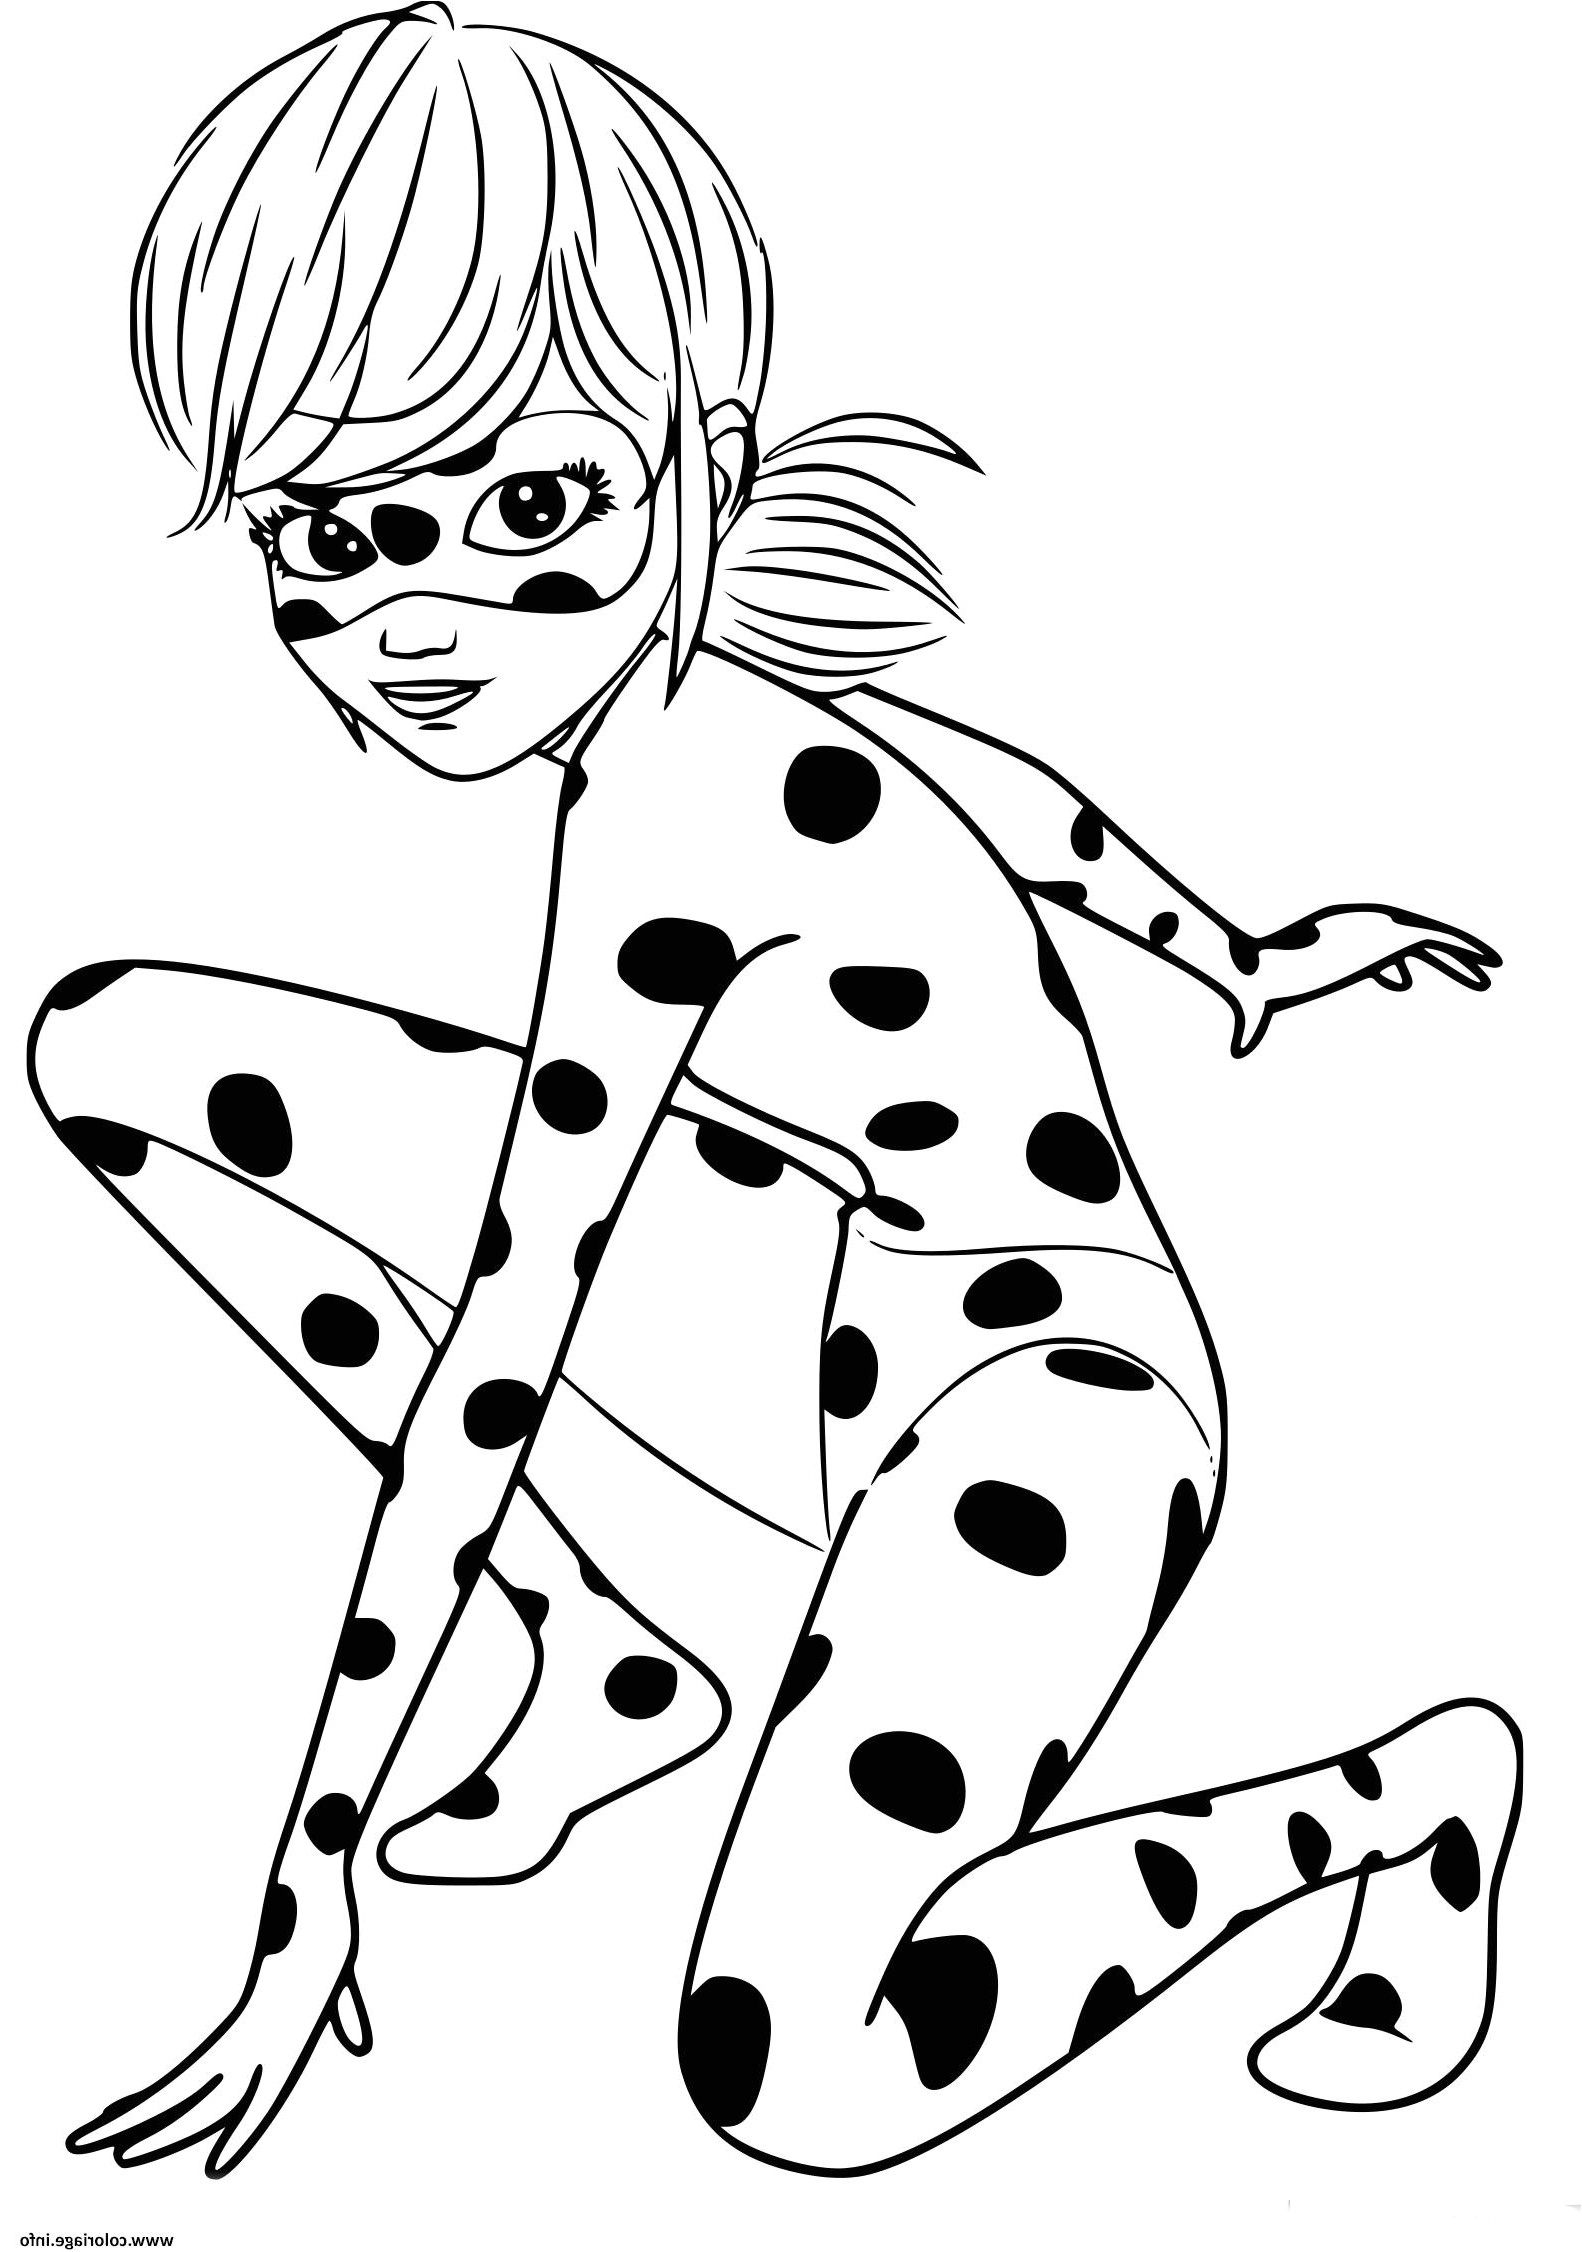 Coloriage Miraculous Ladybug Et Chat Noir A Imprimer Printable Coloriage Miraculous